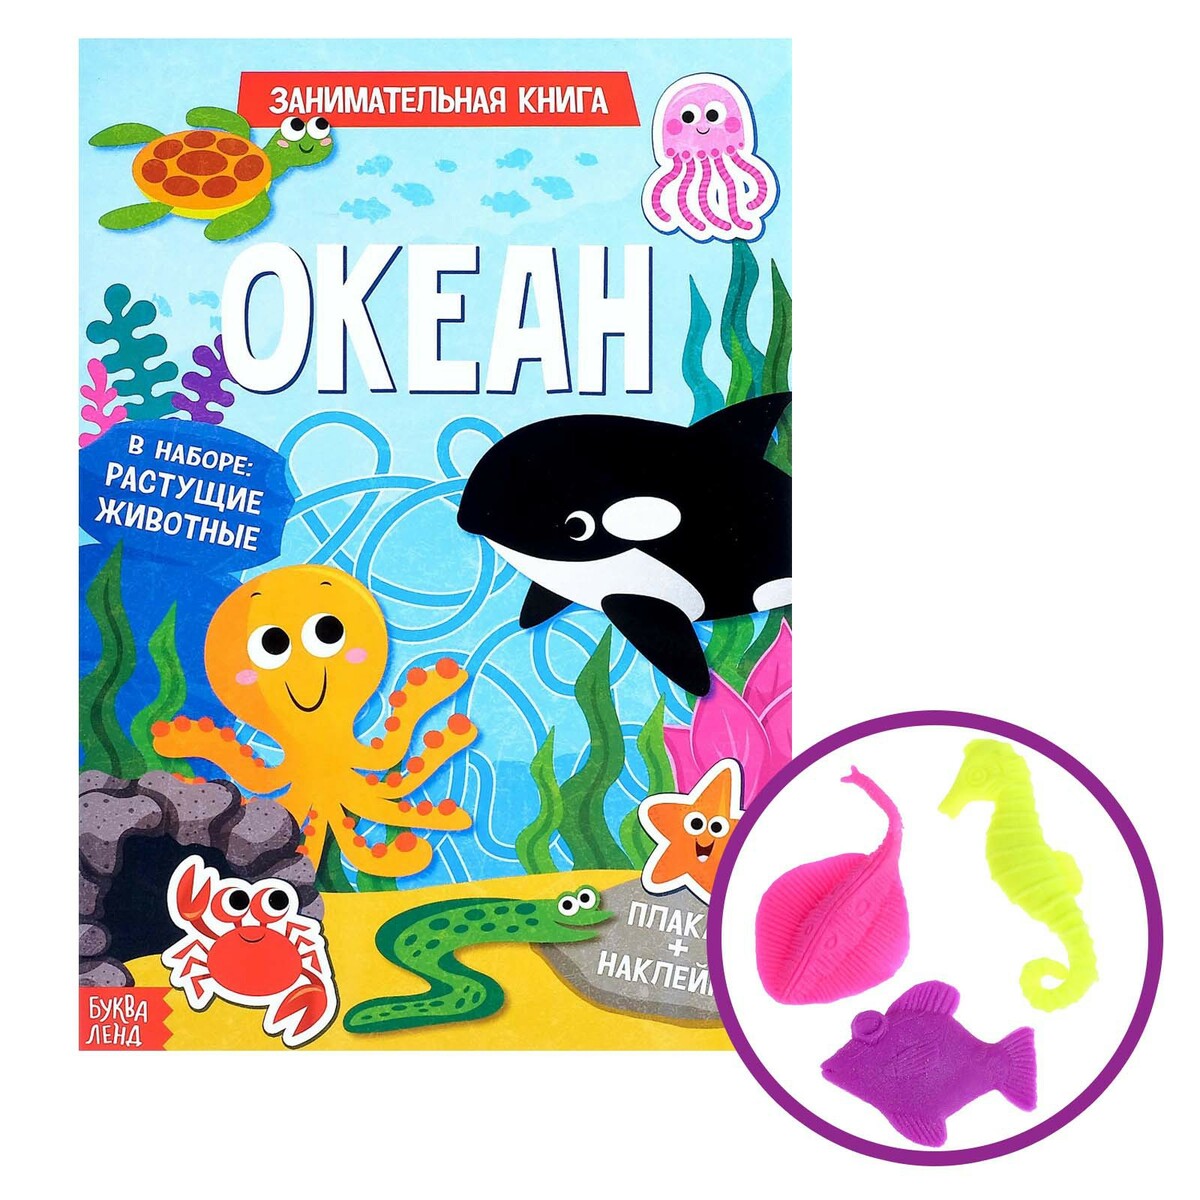 Активити книга с наклейками и растущими игрушками в океане активити с наклейками